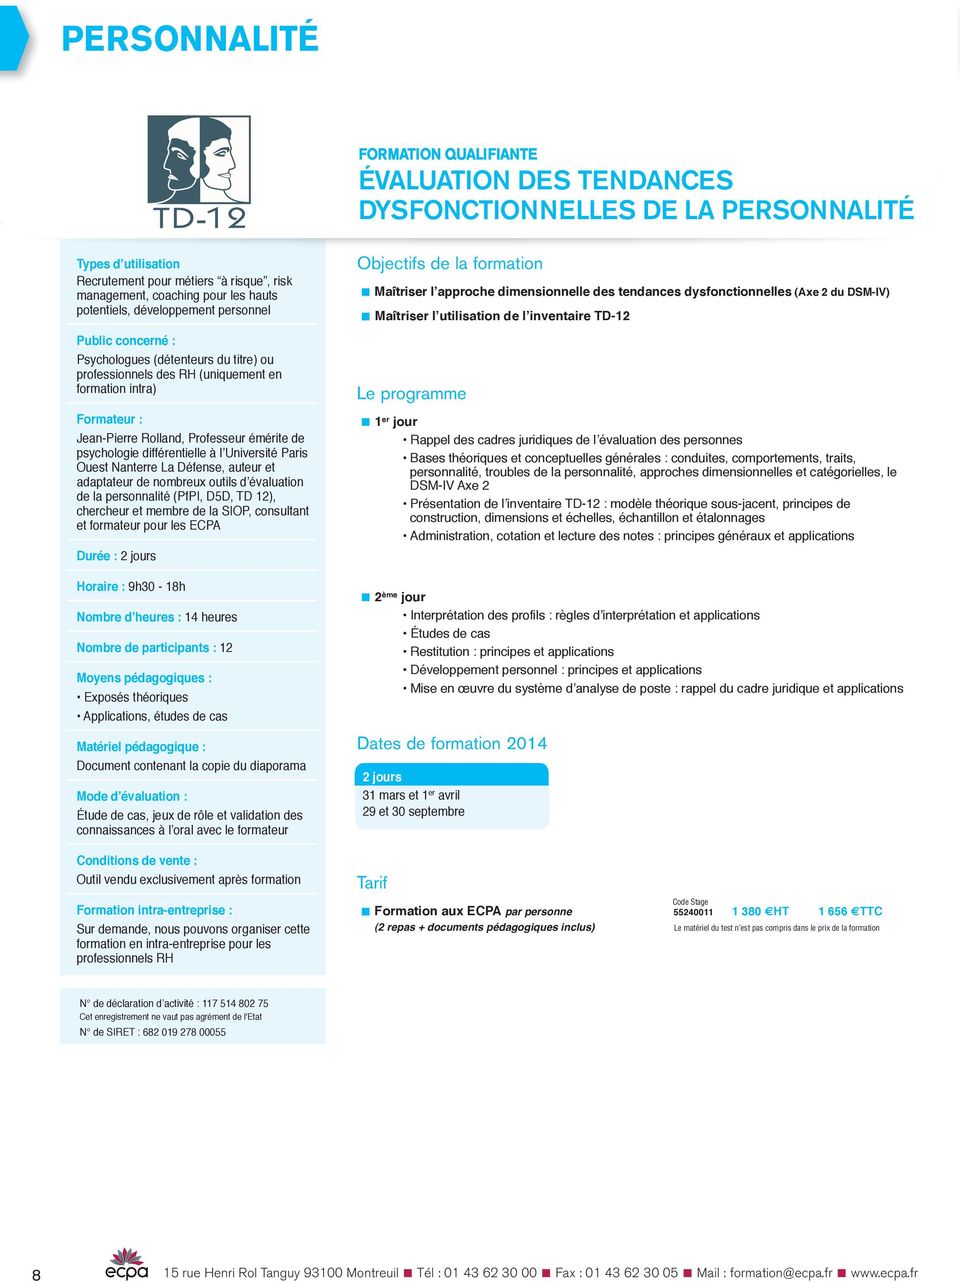 de psychologie différentielle à l Université Paris Ouest Nanterre La Défense, auteur et adaptateur de nombreux outils d évaluation de la personnalité (PfPI, D5D, TD 12), chercheur et membre de la